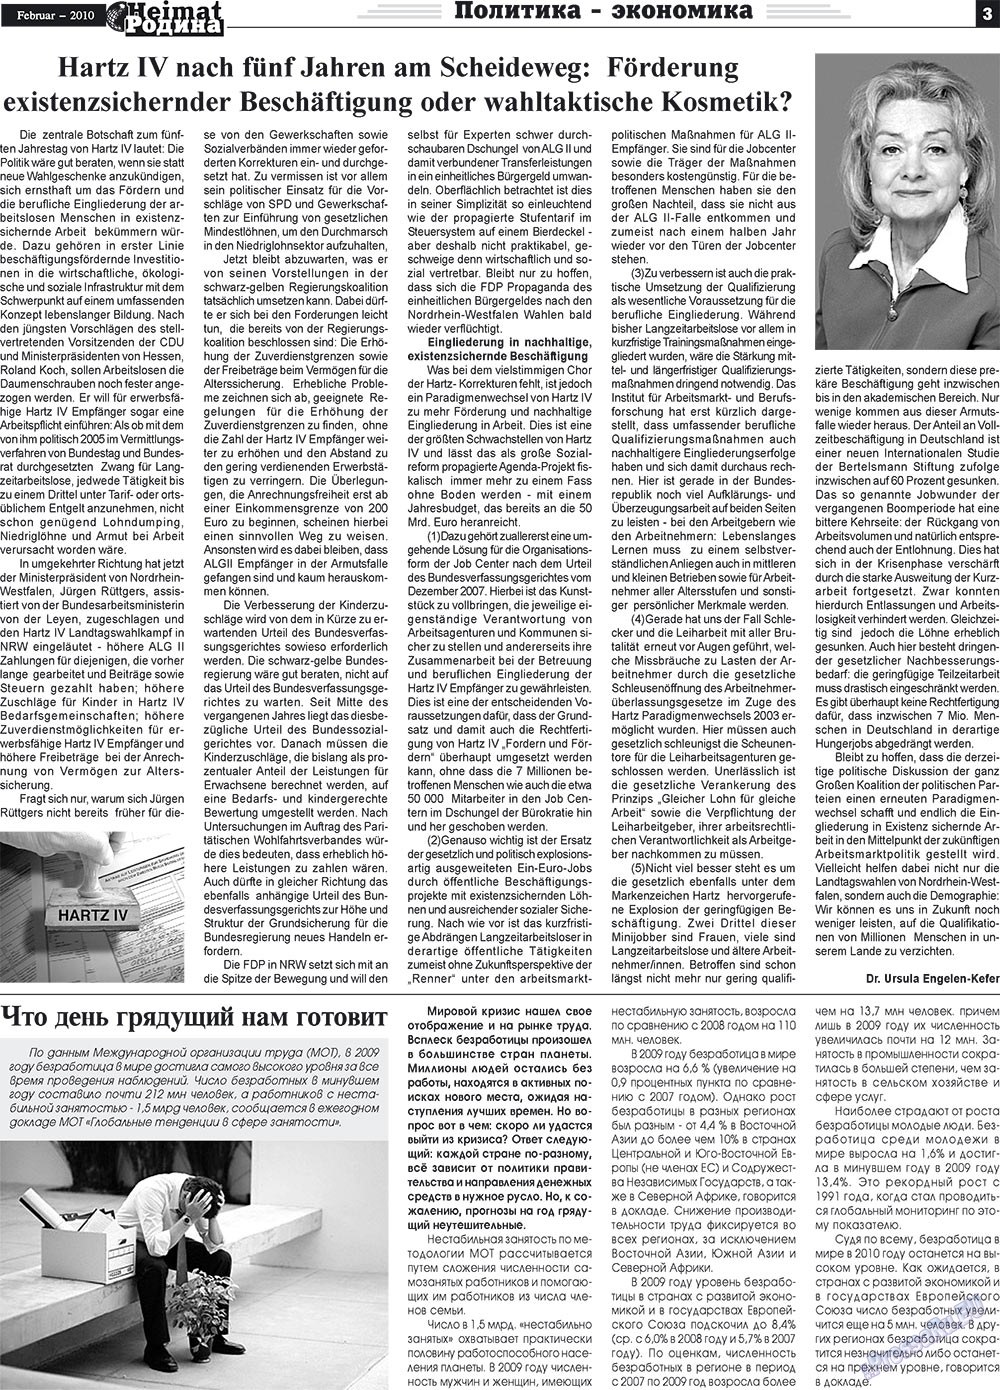 Heimat-Родина (газета). 2010 год, номер 2, стр. 3